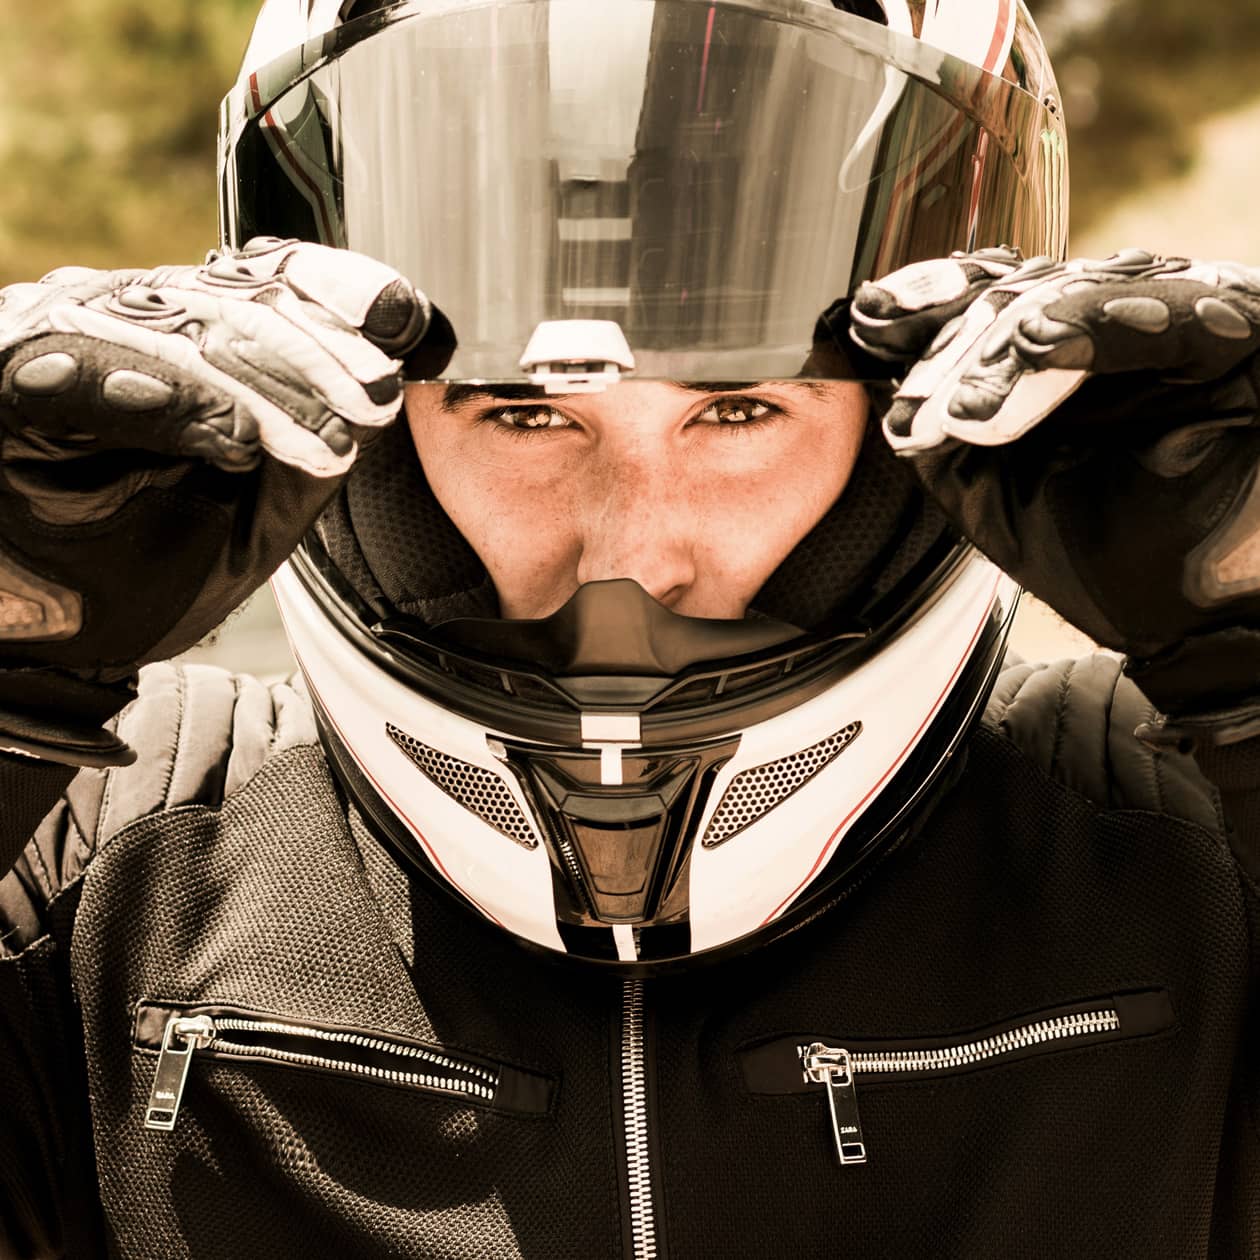 Casque moto, équipement de protection. Comment bien choisir ?